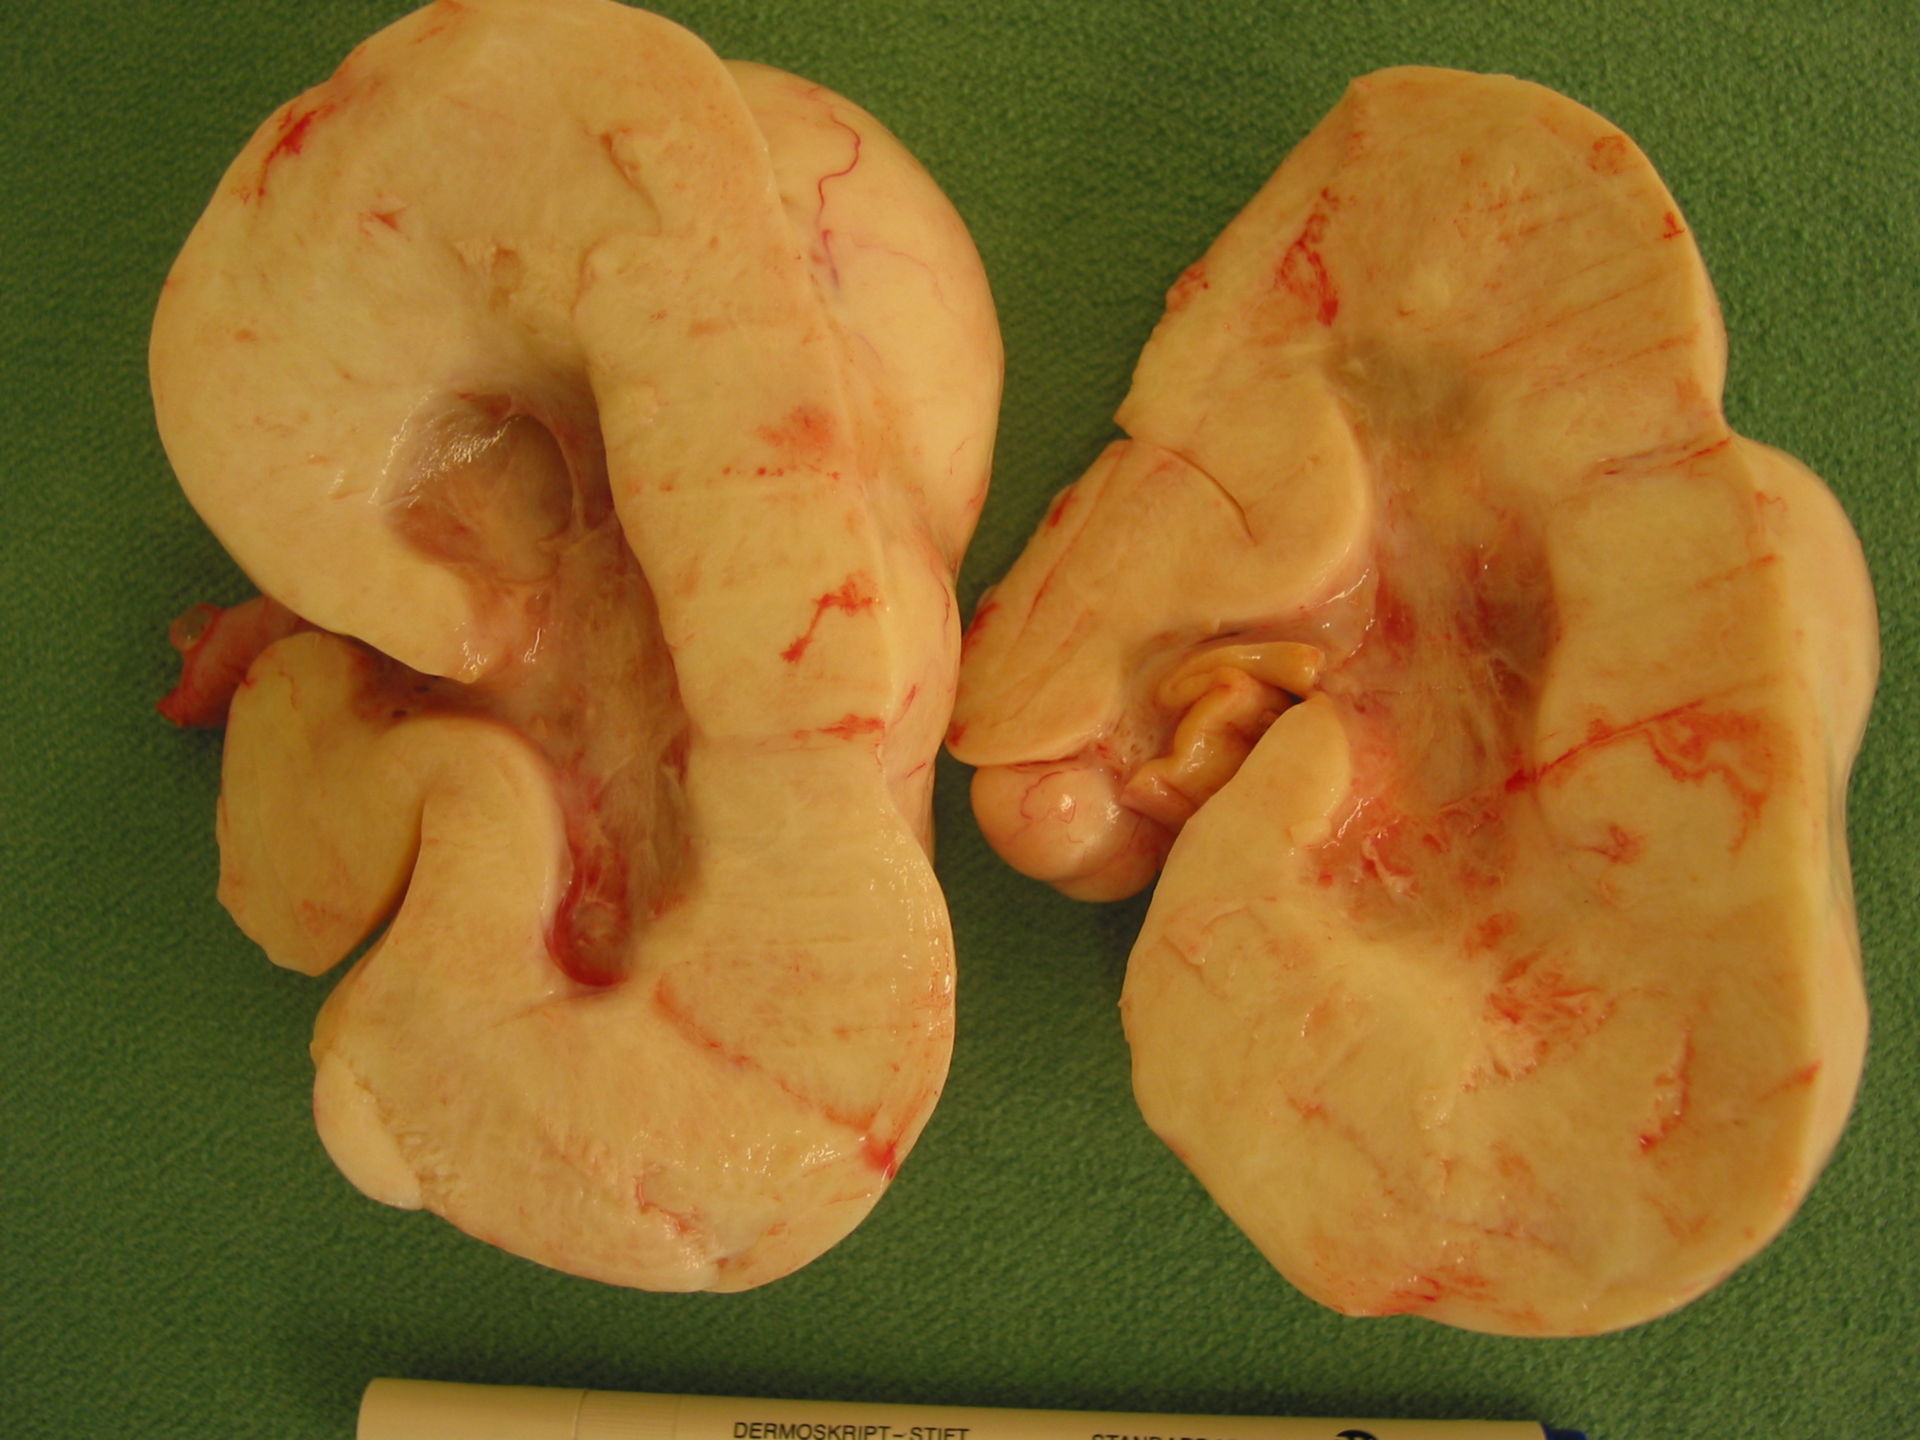 Tumor de células de la granulosa del ovario izquierdo